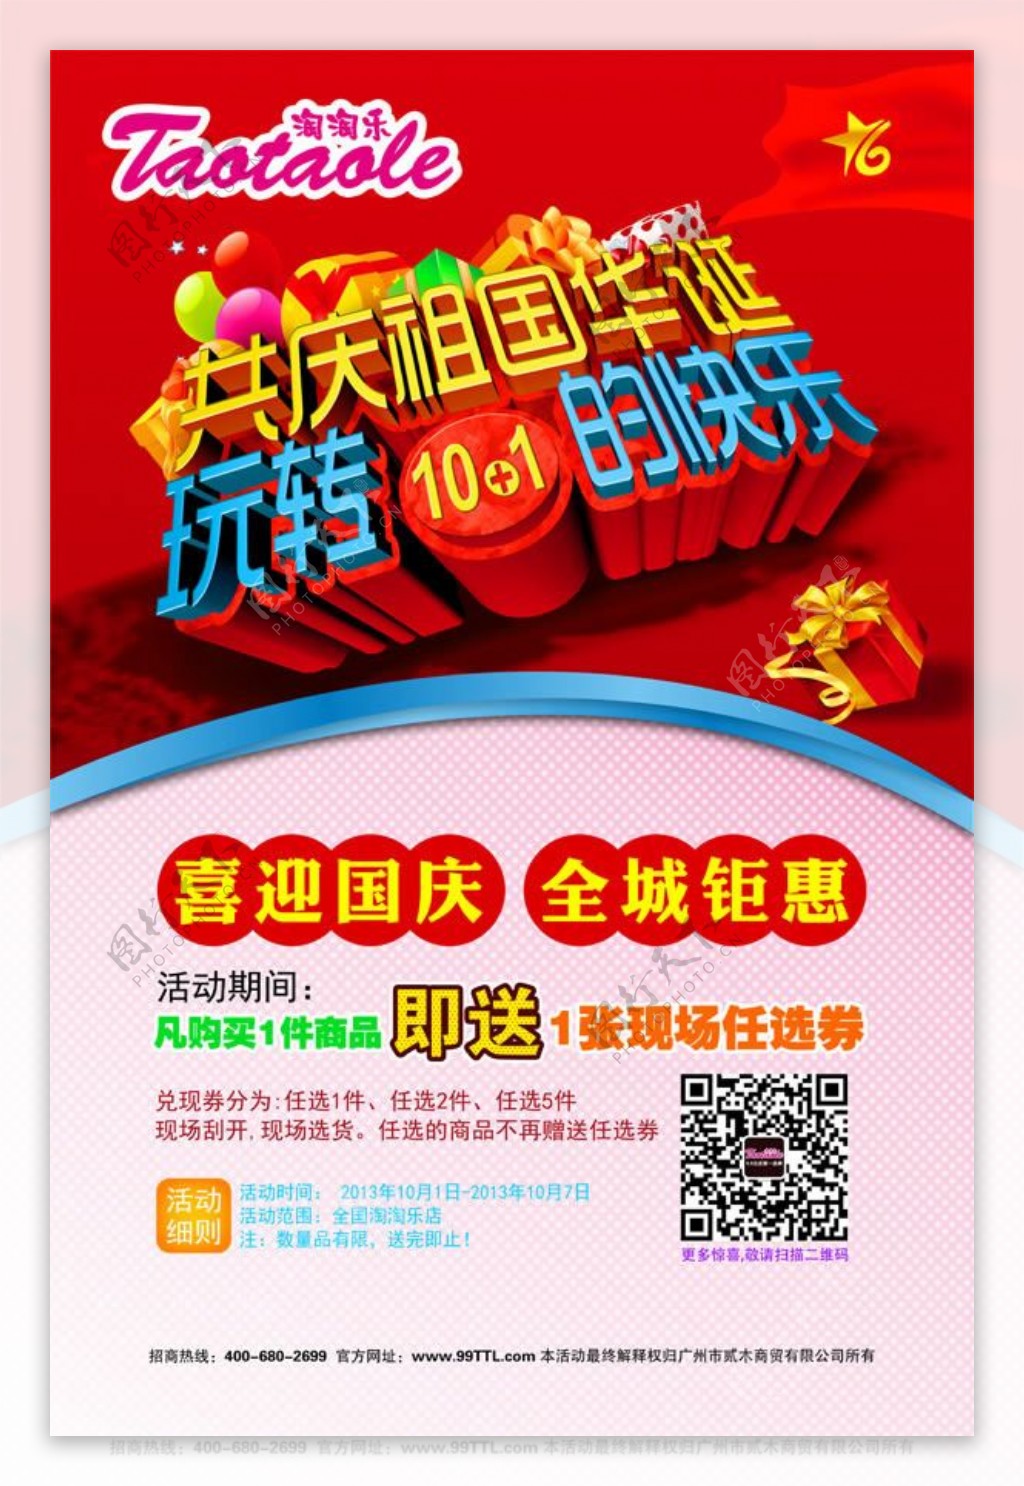 淘淘乐国庆节活动促销海报